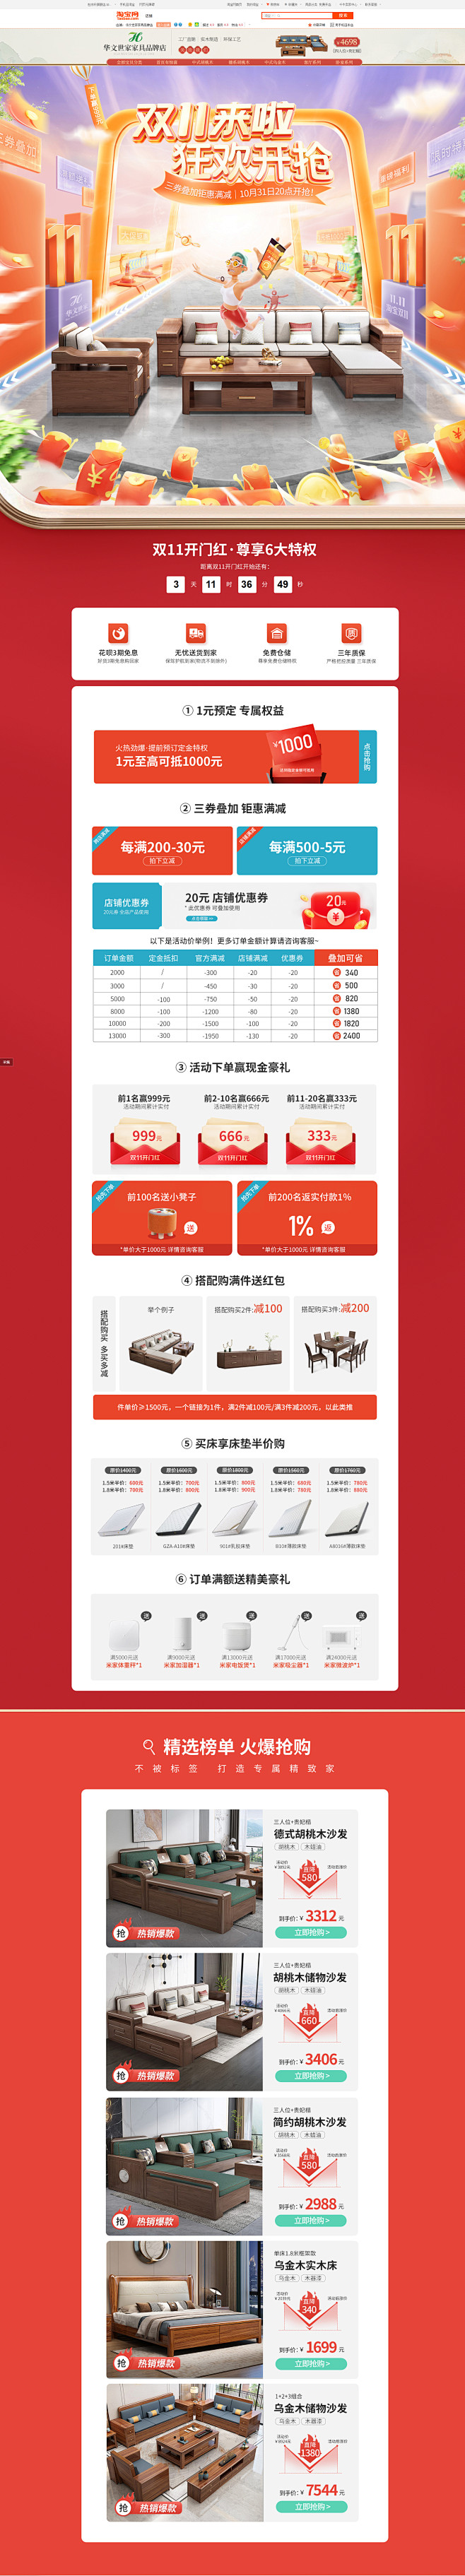 线上首页-华文世家家具品牌店-淘宝网